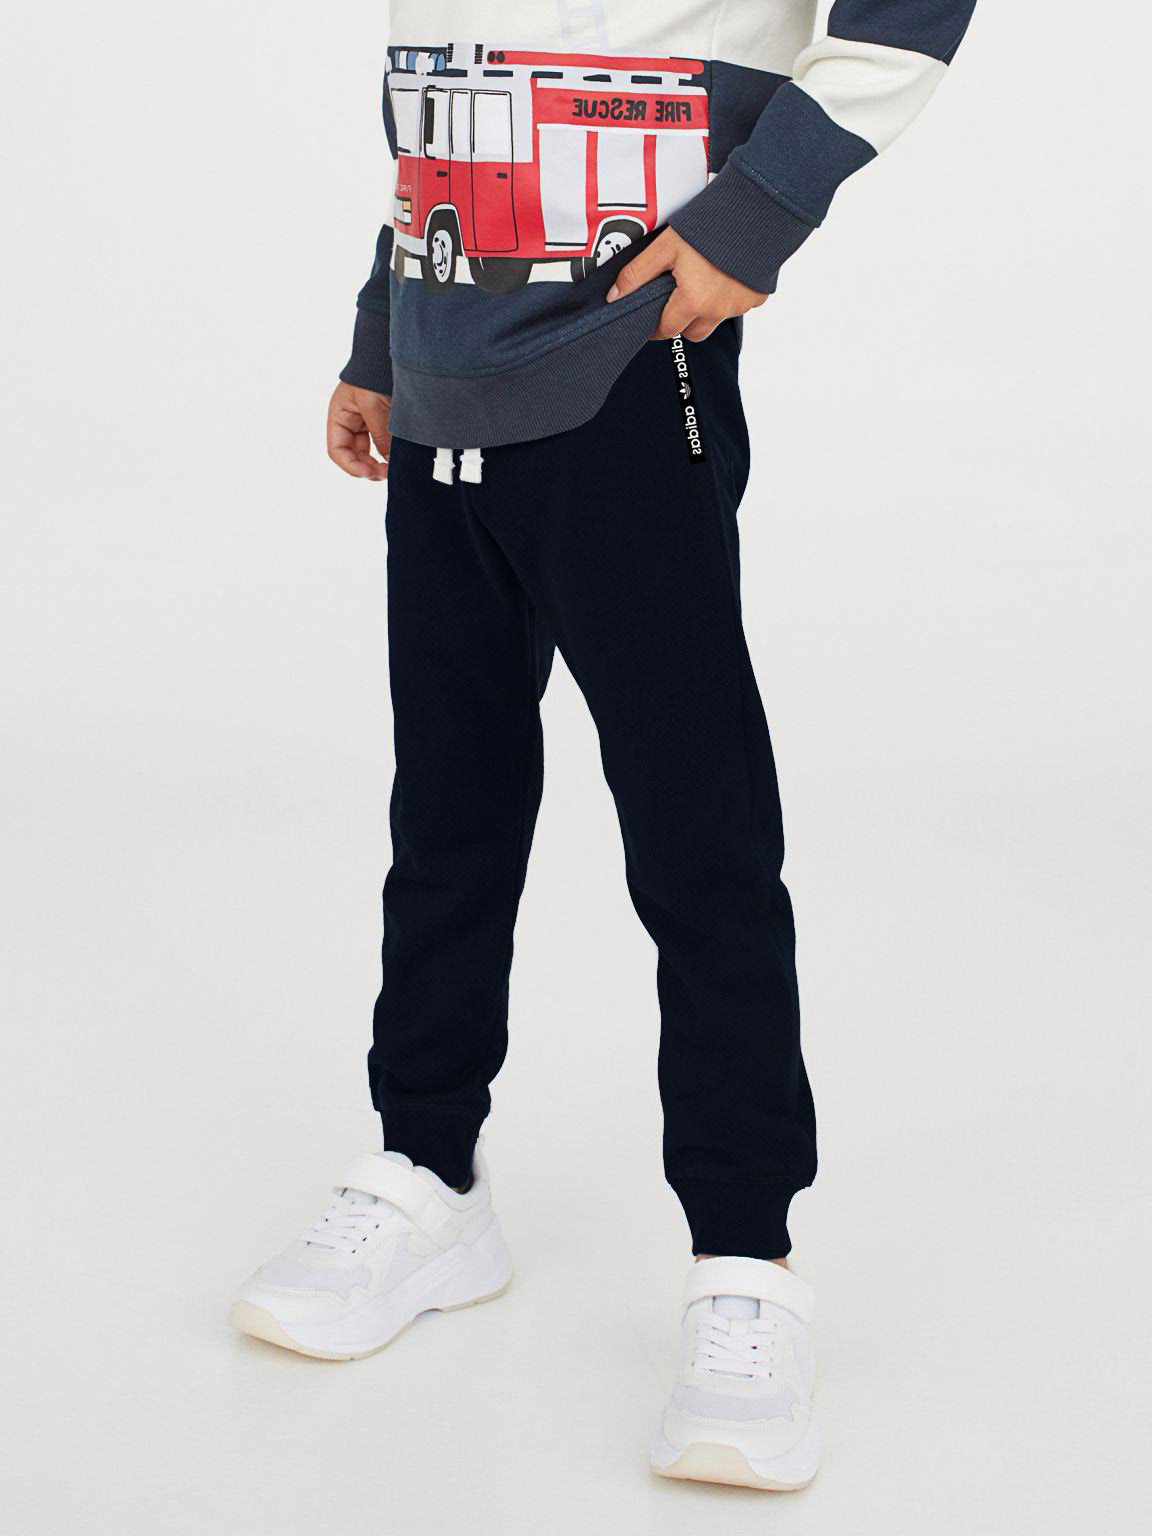 ADS Fleece Slim Fit Jogger Trouser For Kids-Dark Navy-SP883/Rt2168